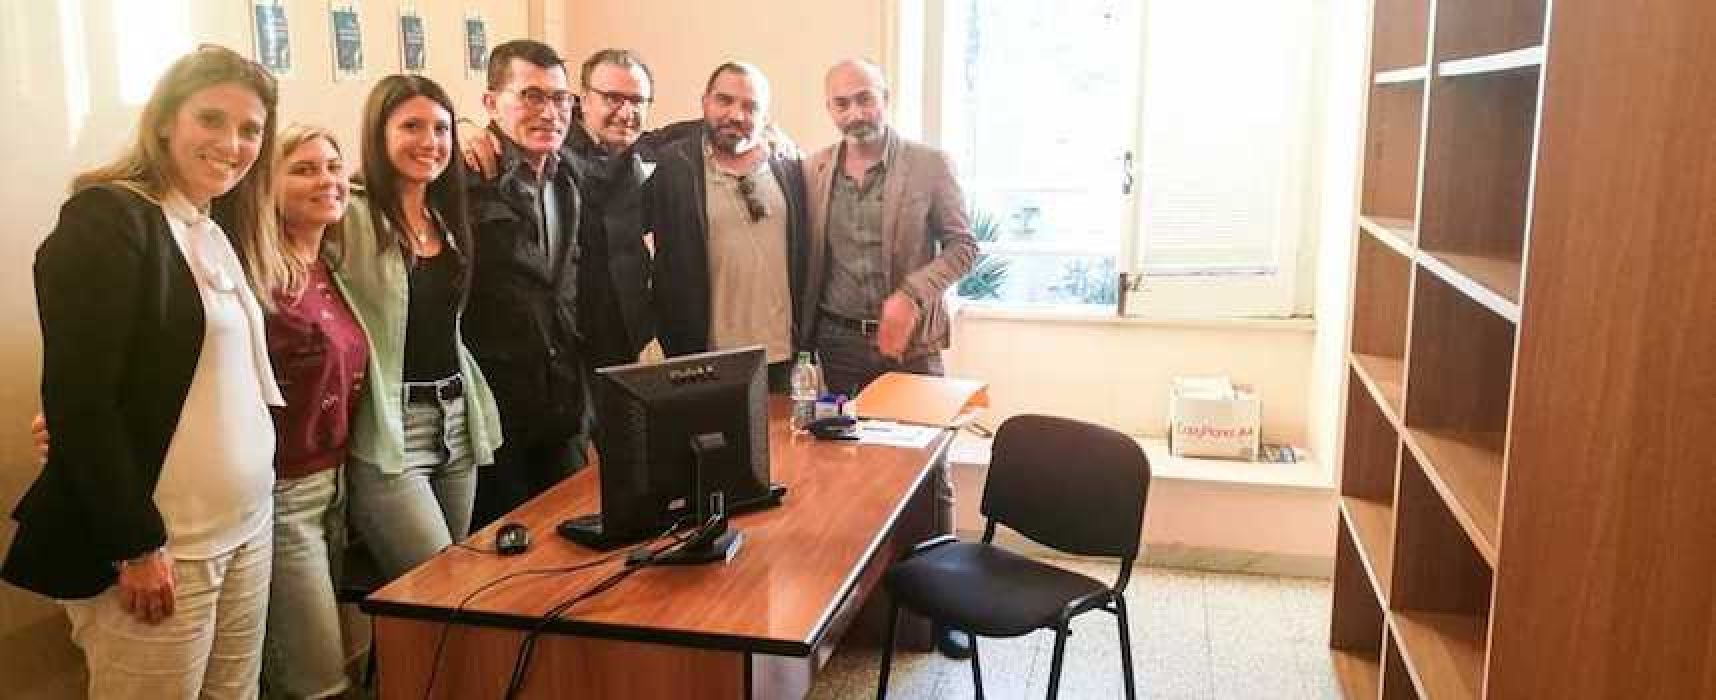 L’imprenditore Sinisi dona mobili per ufficio comunale destinato ad associazioni